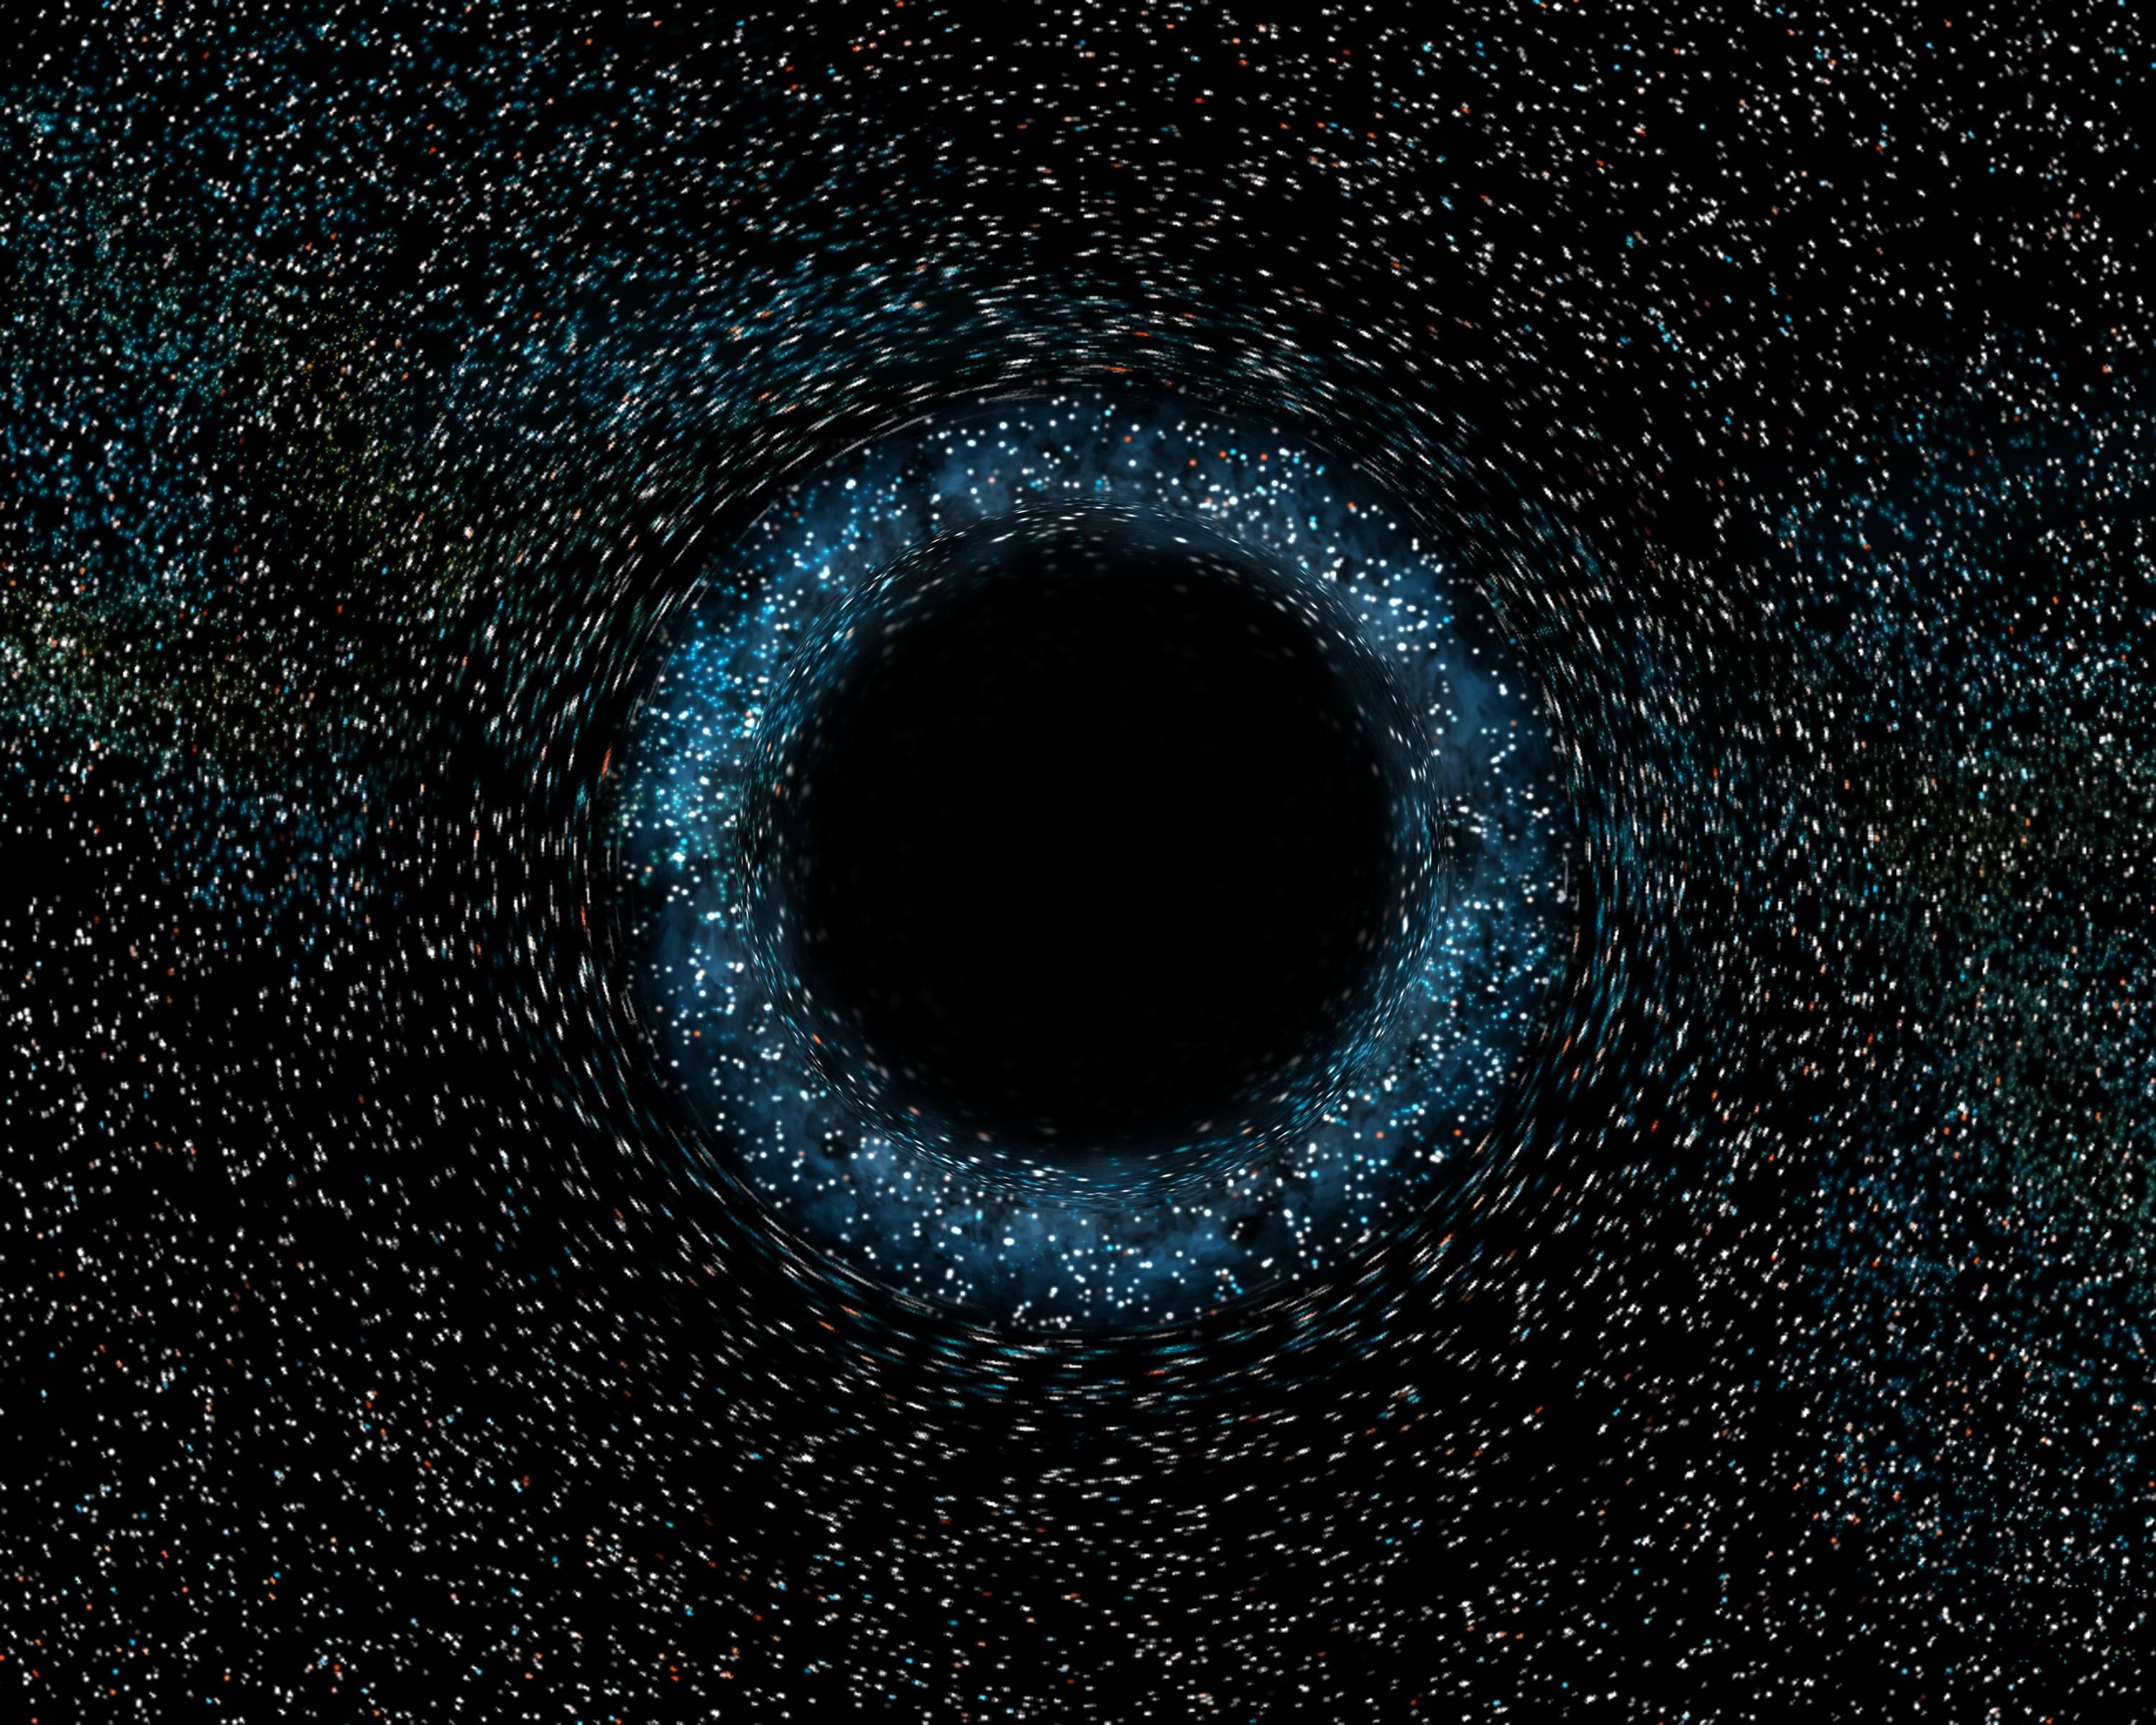 Black Hole image!